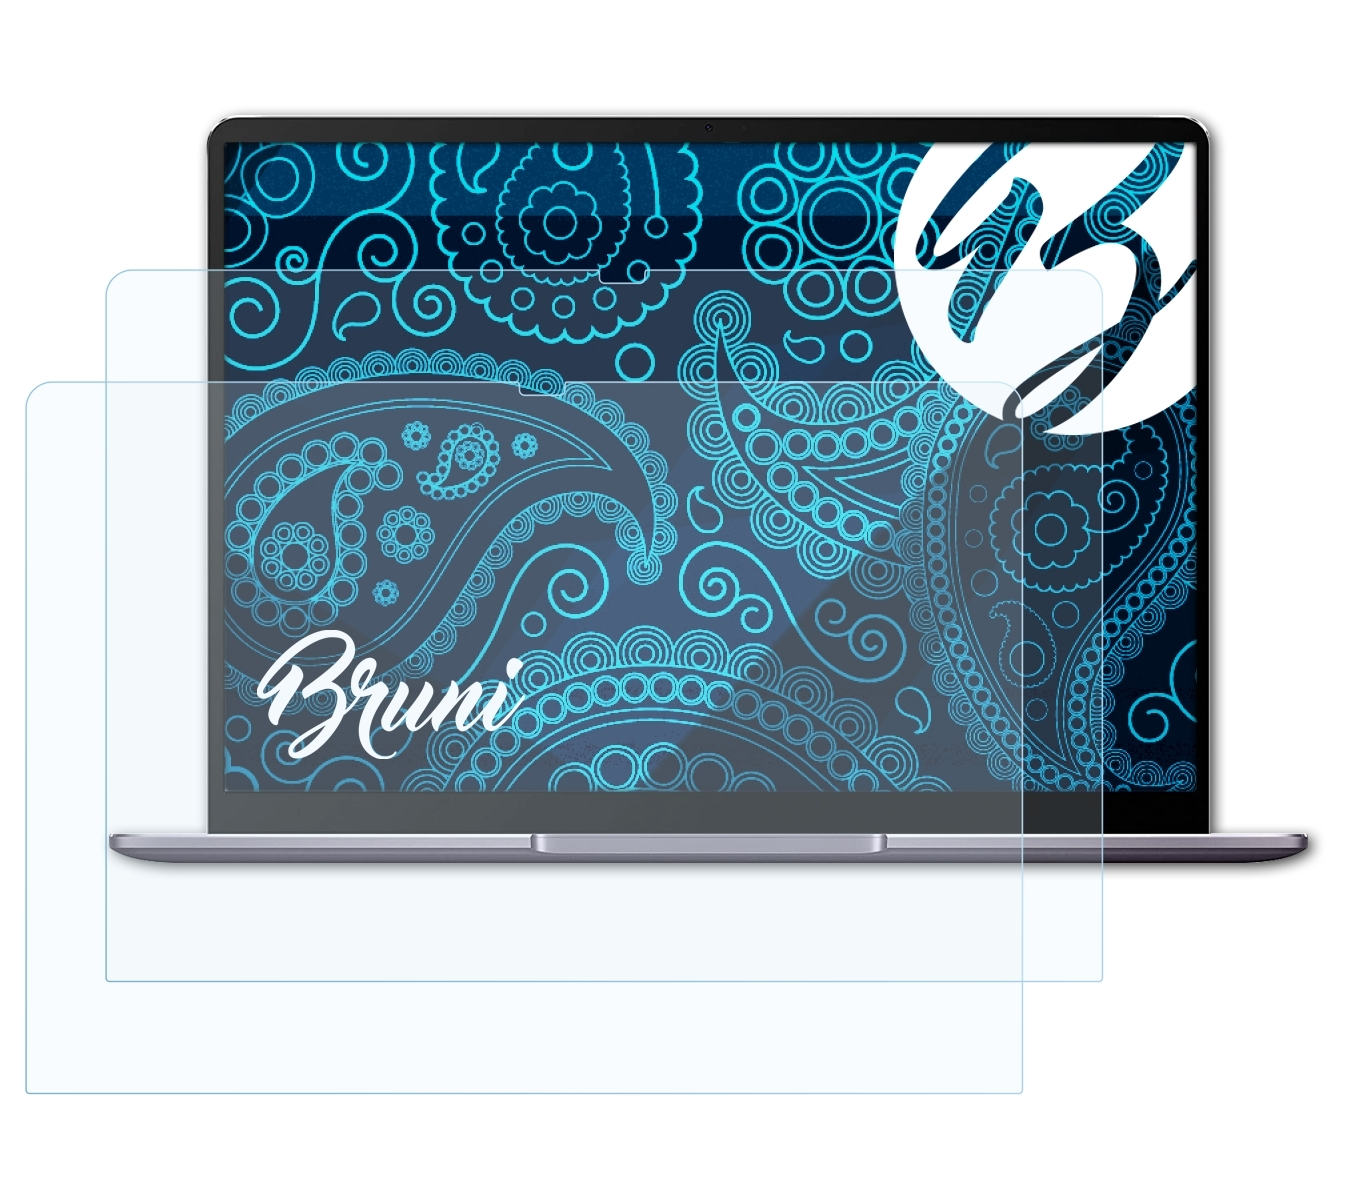 BRUNI 2x Basics-Clear Schutzfolie(für 13 Huawei MateBook (2020))